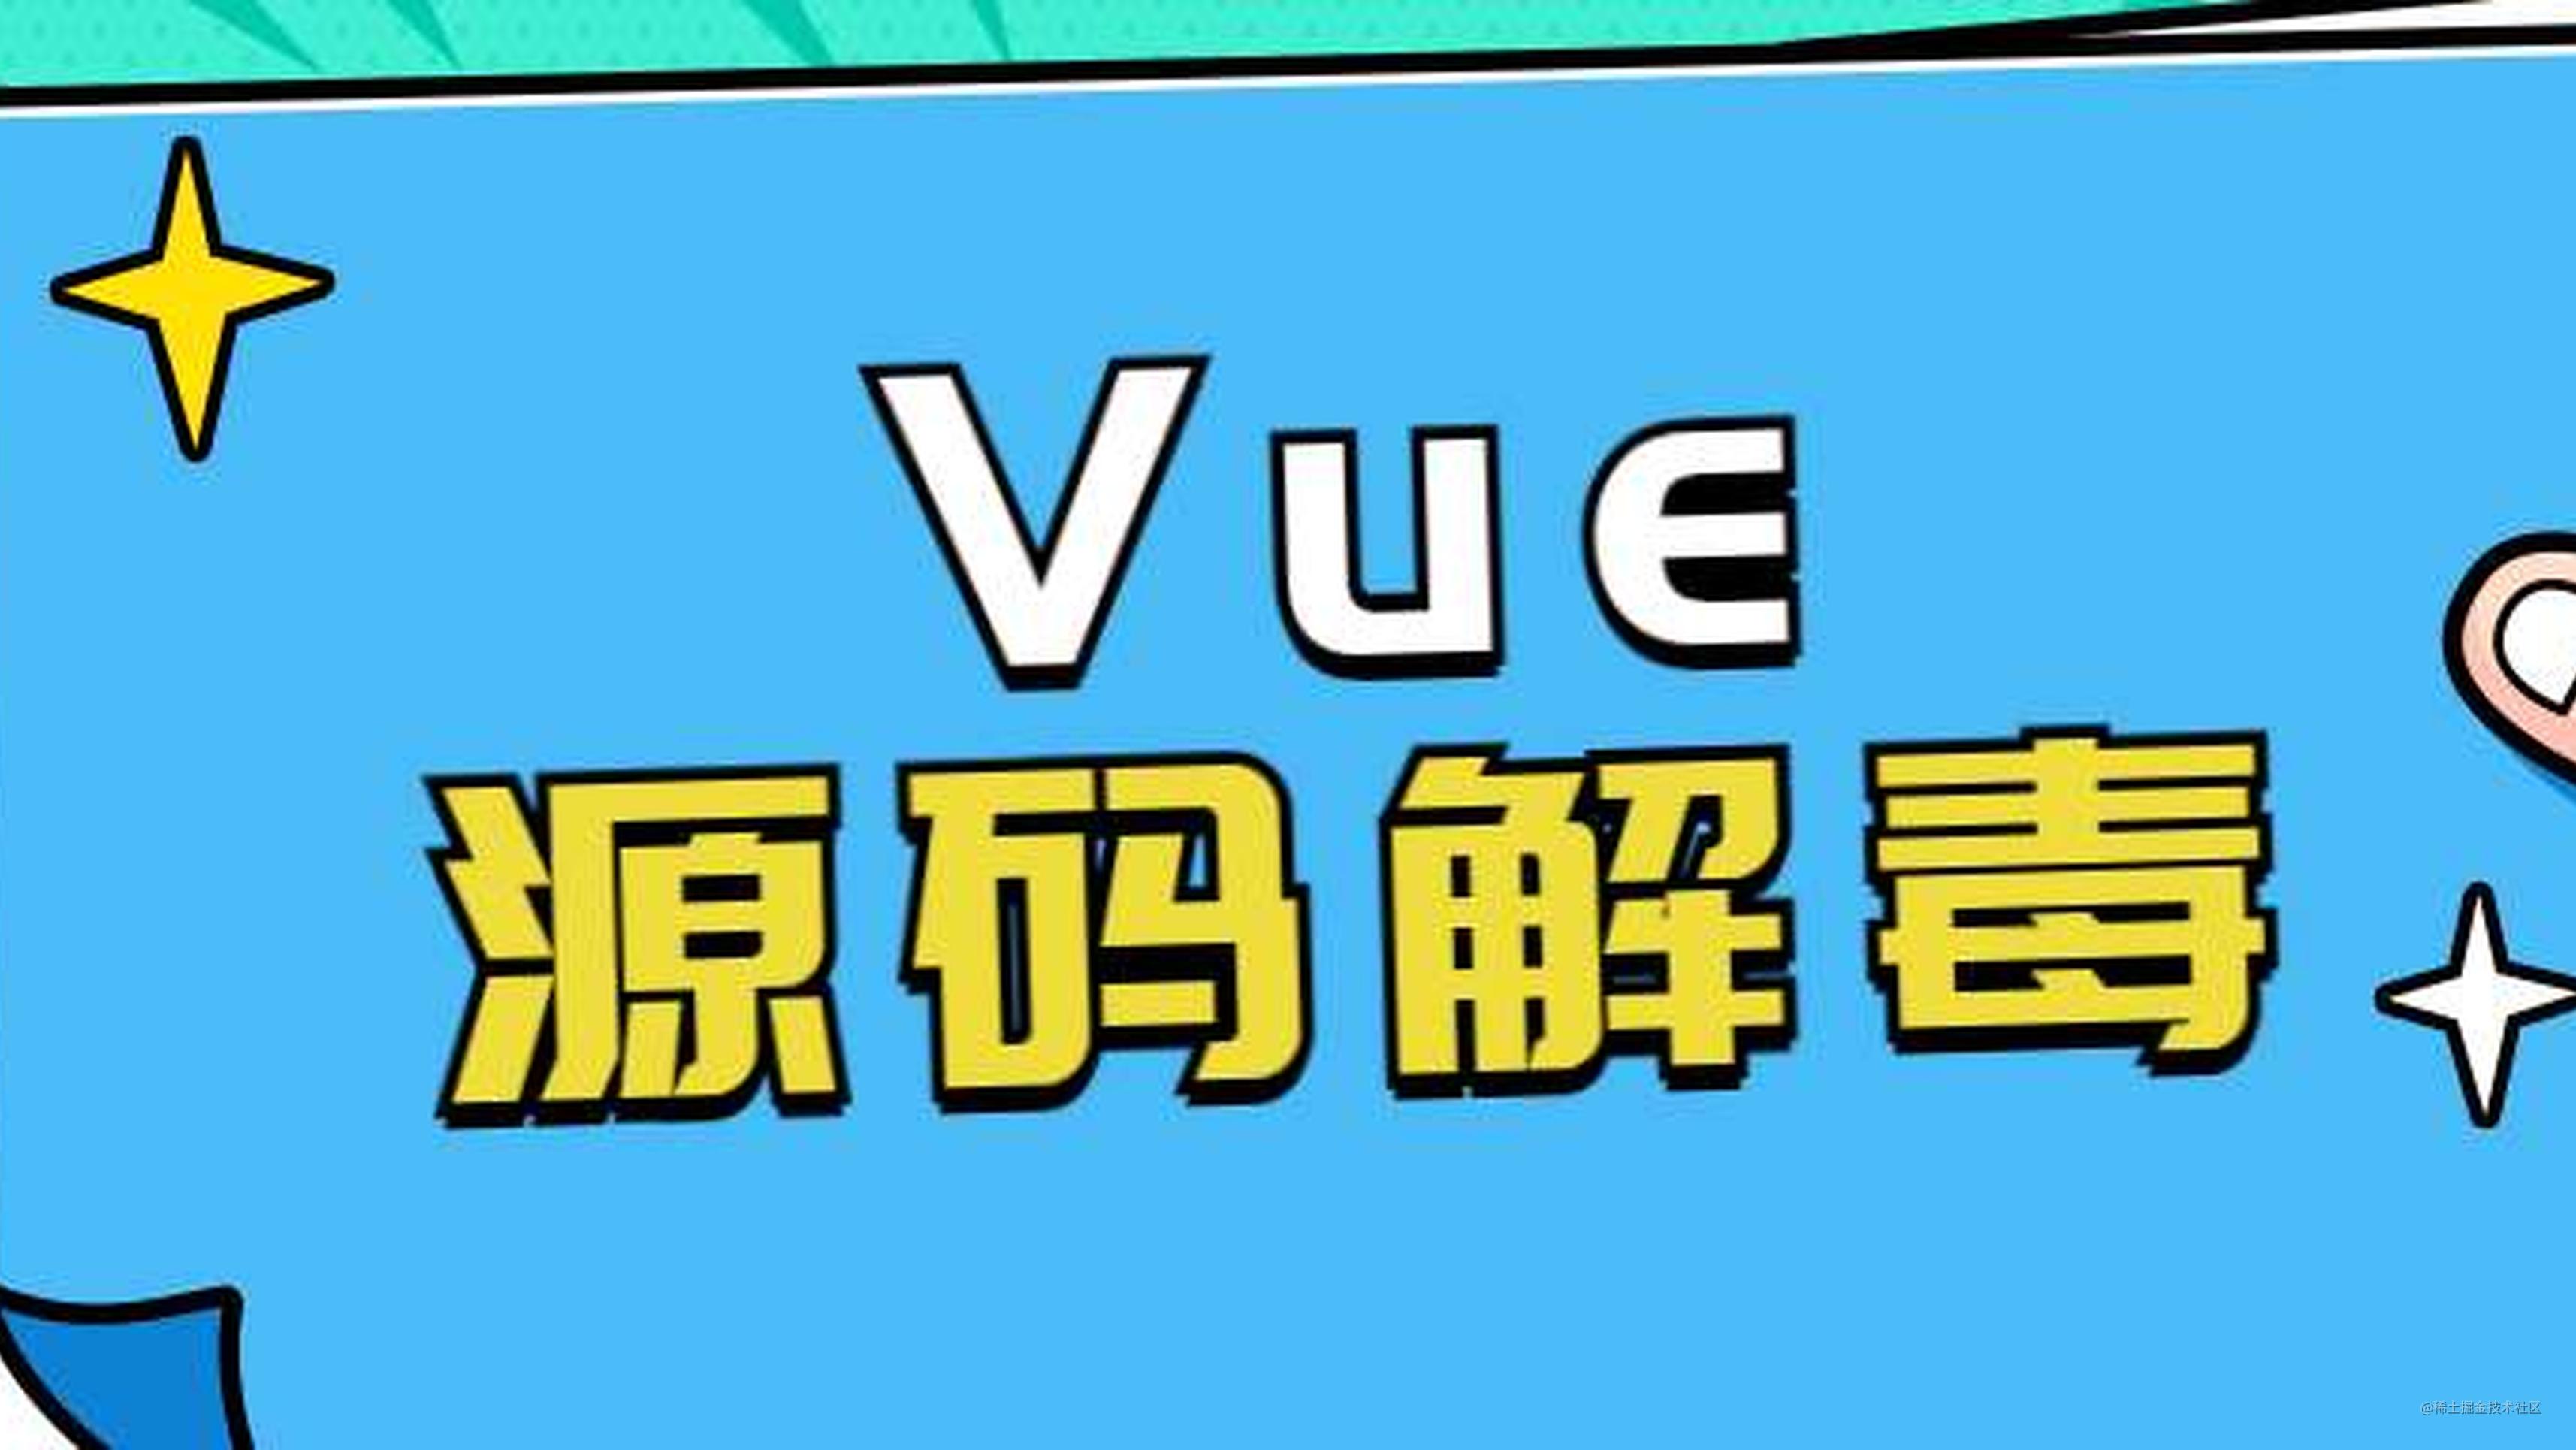 Vue（v2.6.14）源码解毒（预）：手写一个简易版Vue